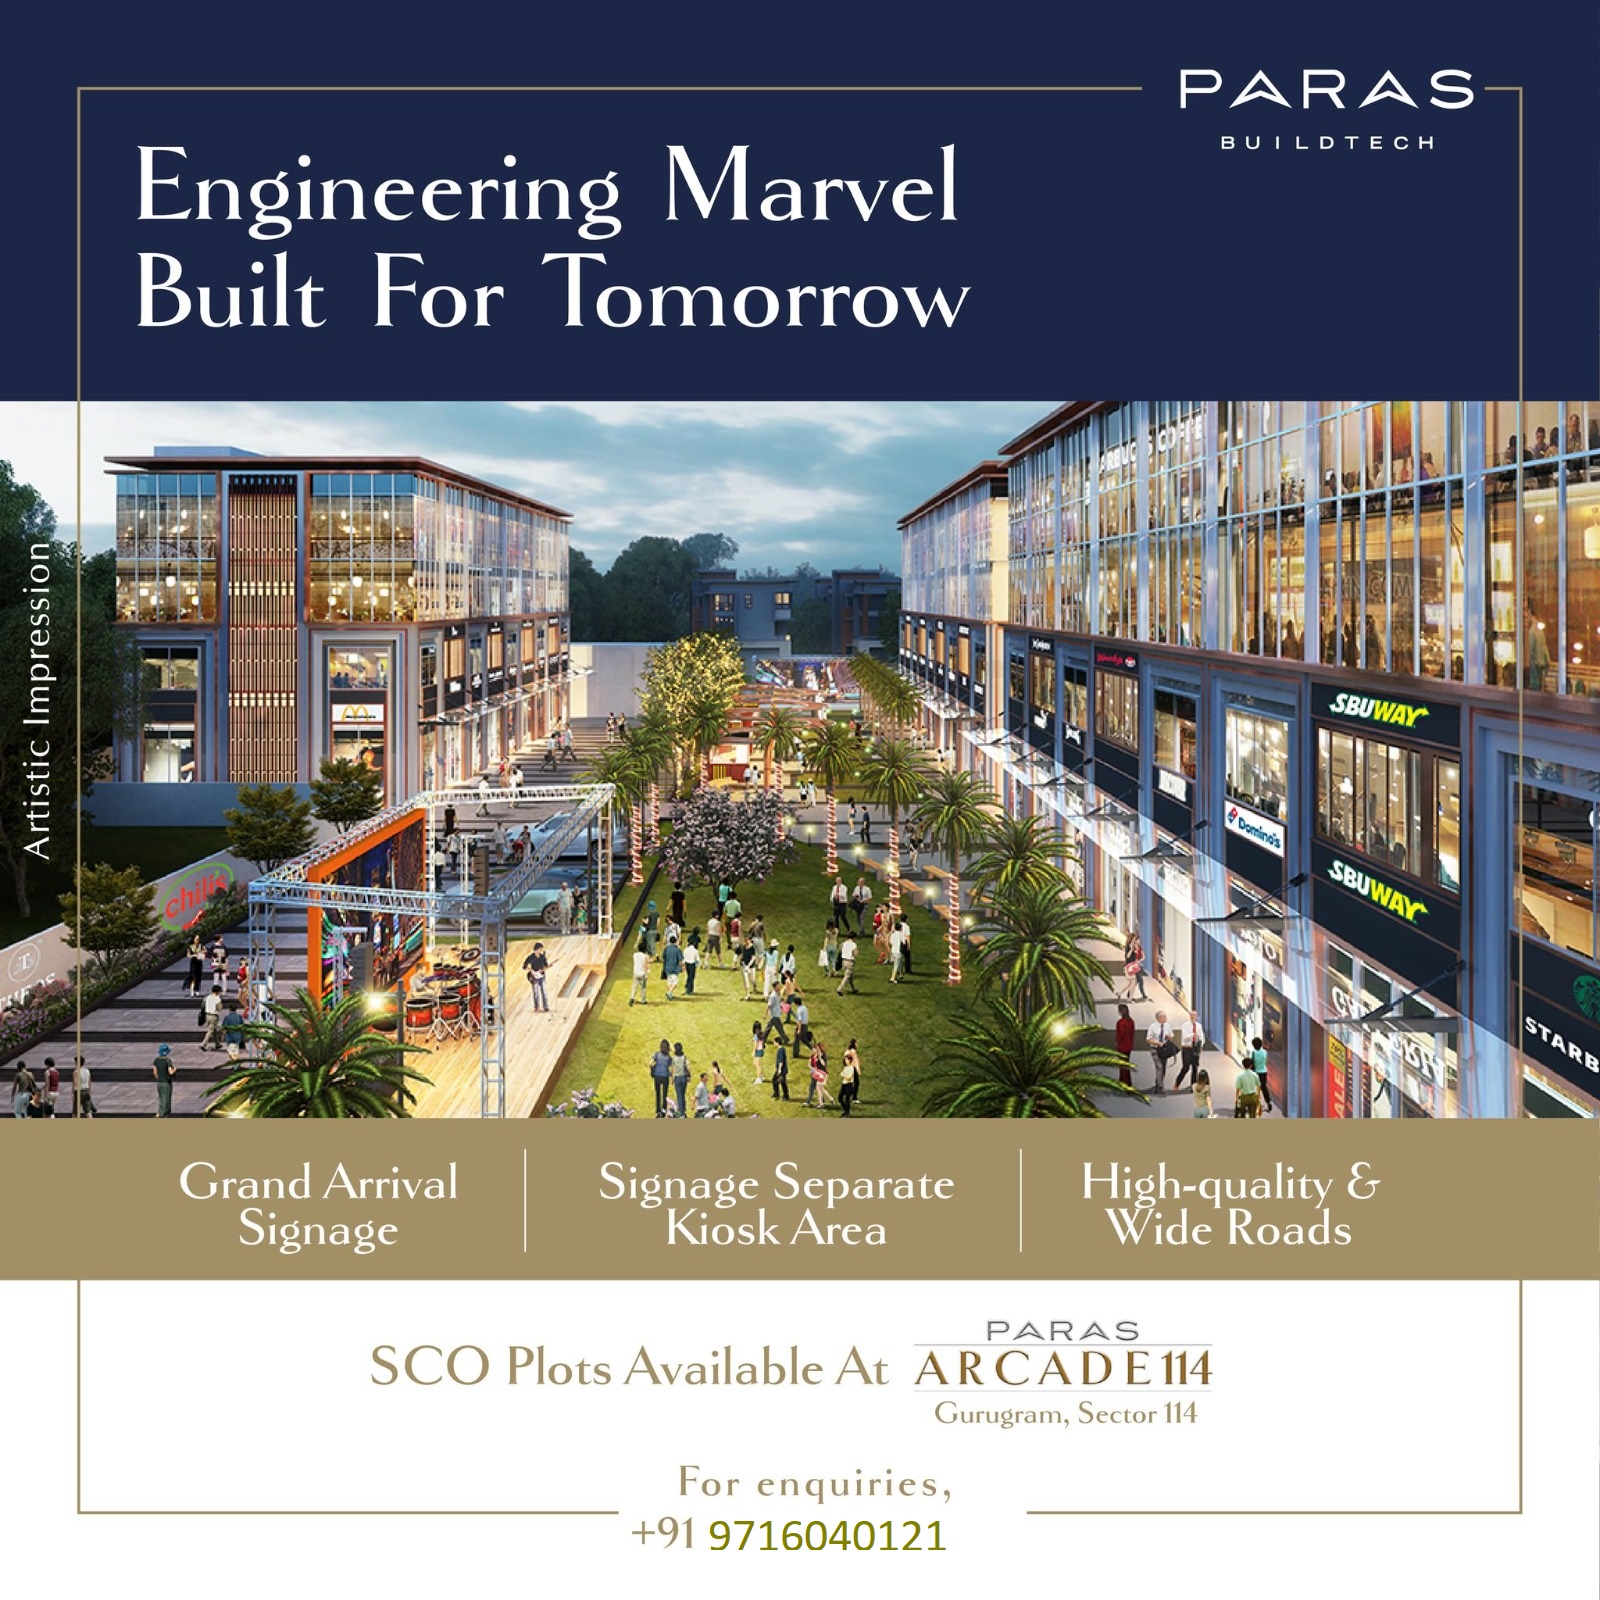 Paras Buildtech Presents Arcade 114 - An Engineering Marvel in Gurugram's Sector 114 Update